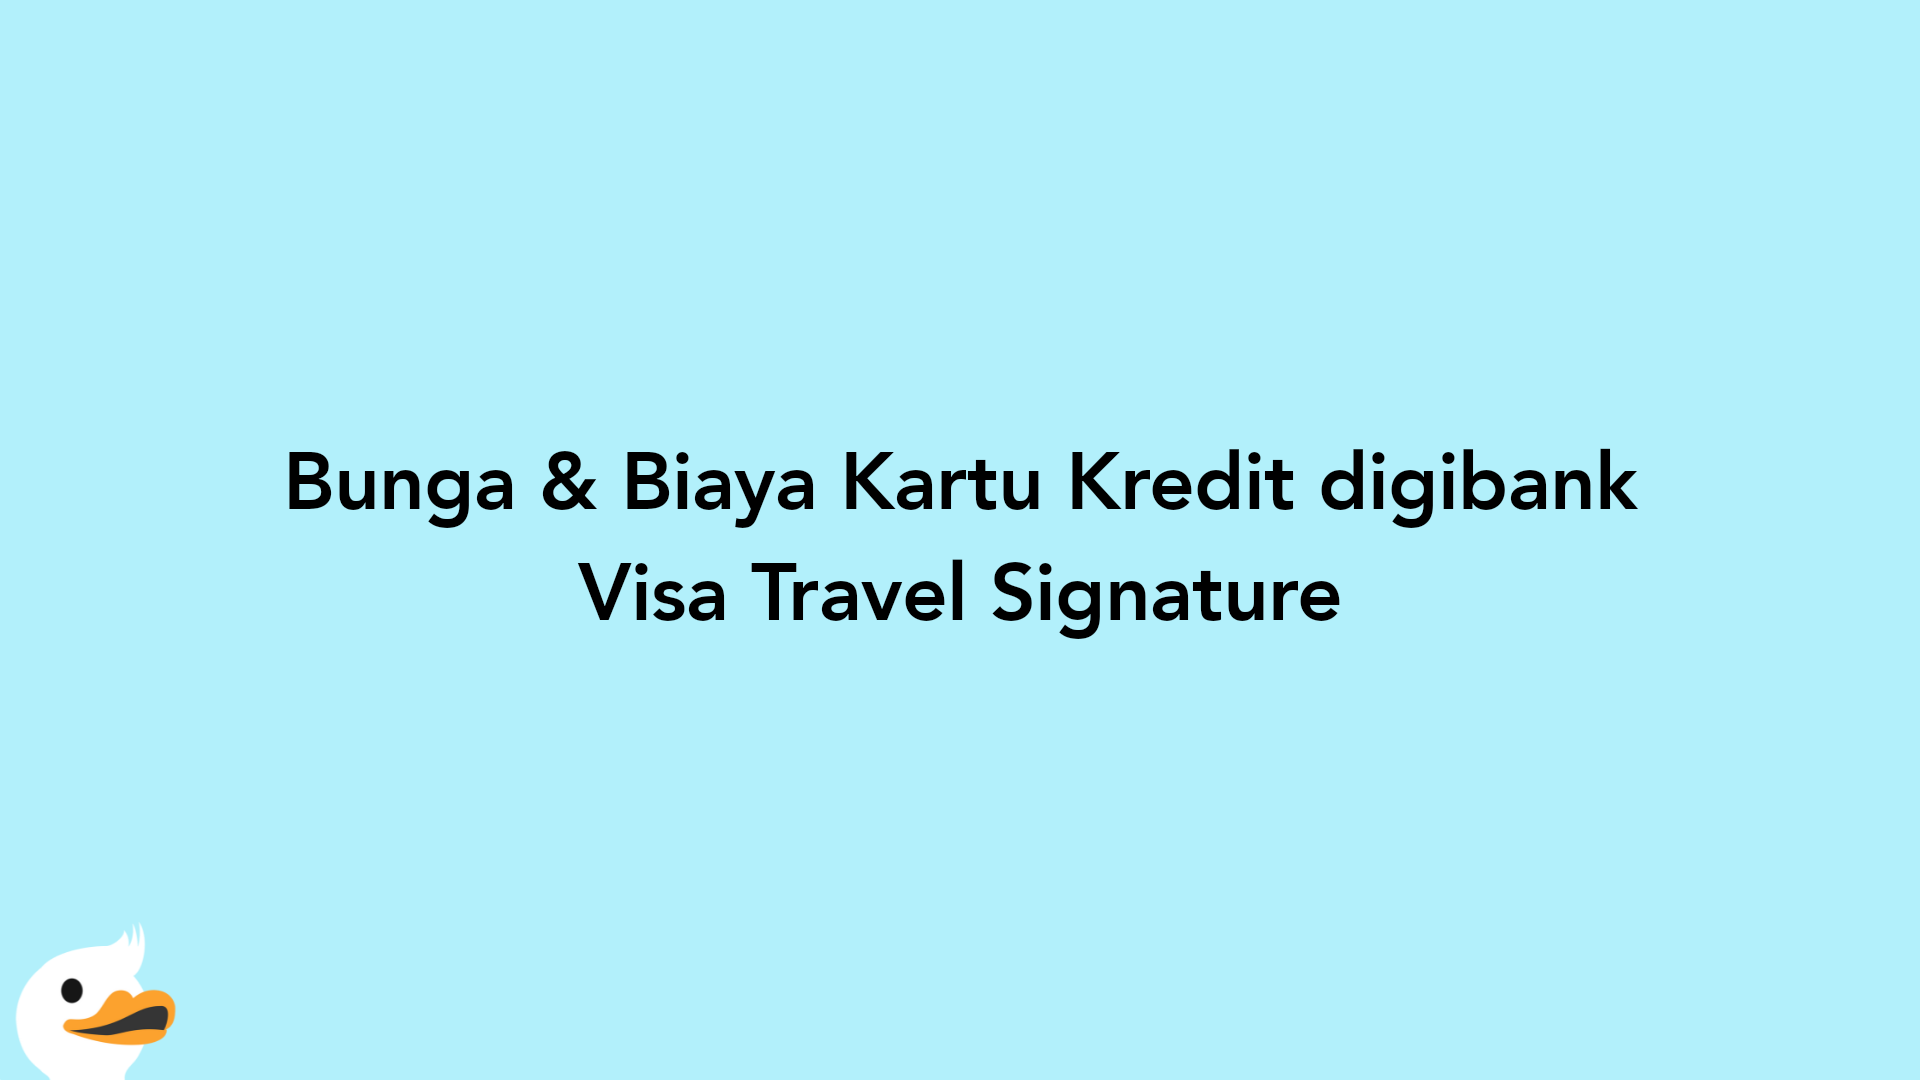 Bunga & Biaya Kartu Kredit digibank Visa Travel Signature